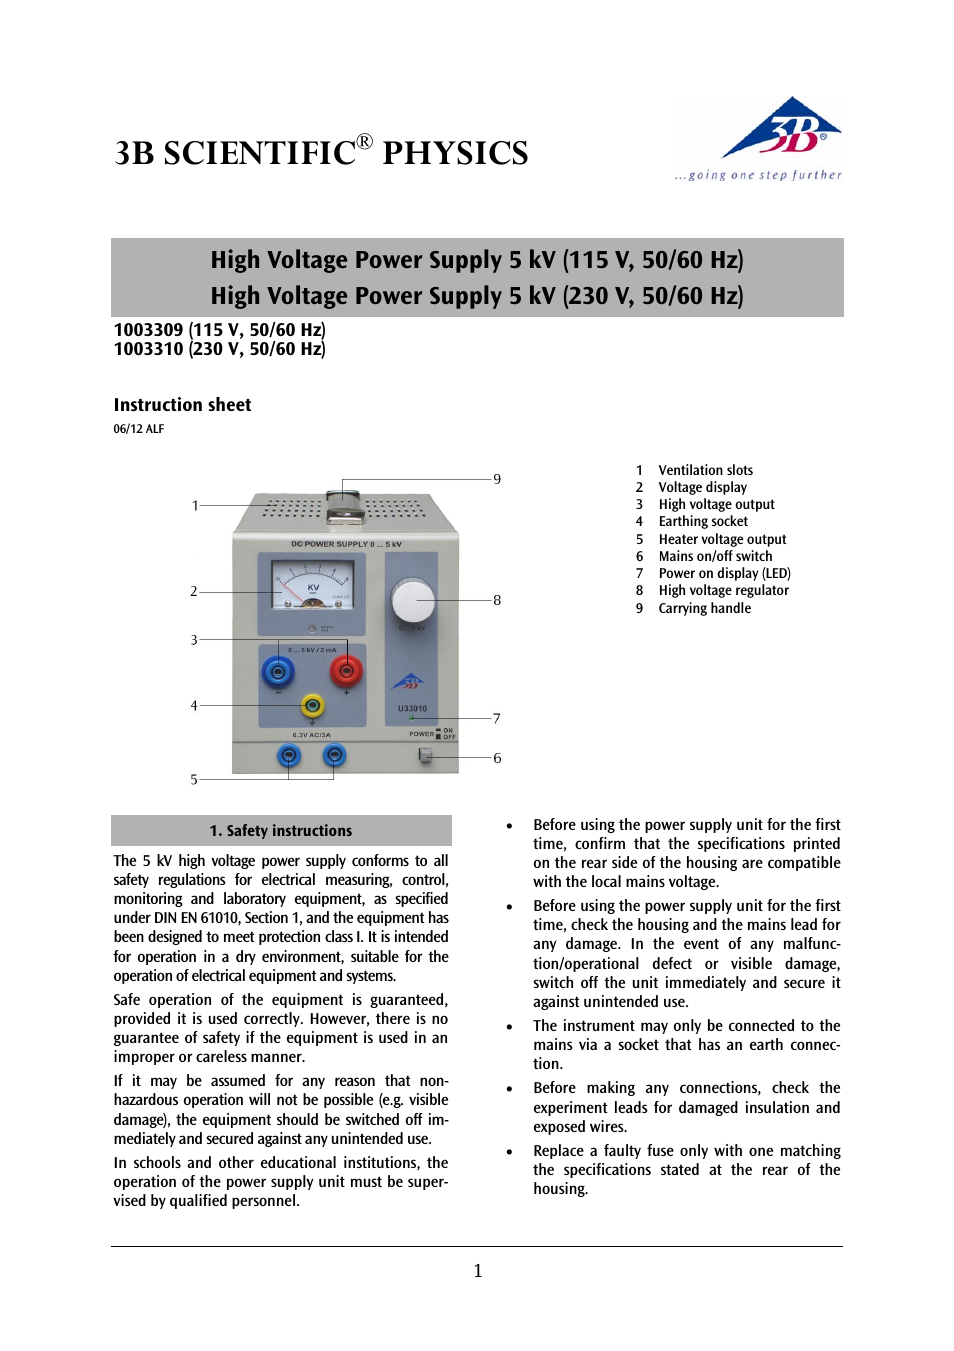 High Voltage Power Supply 5 kV (115 V, 50__60 Hz)